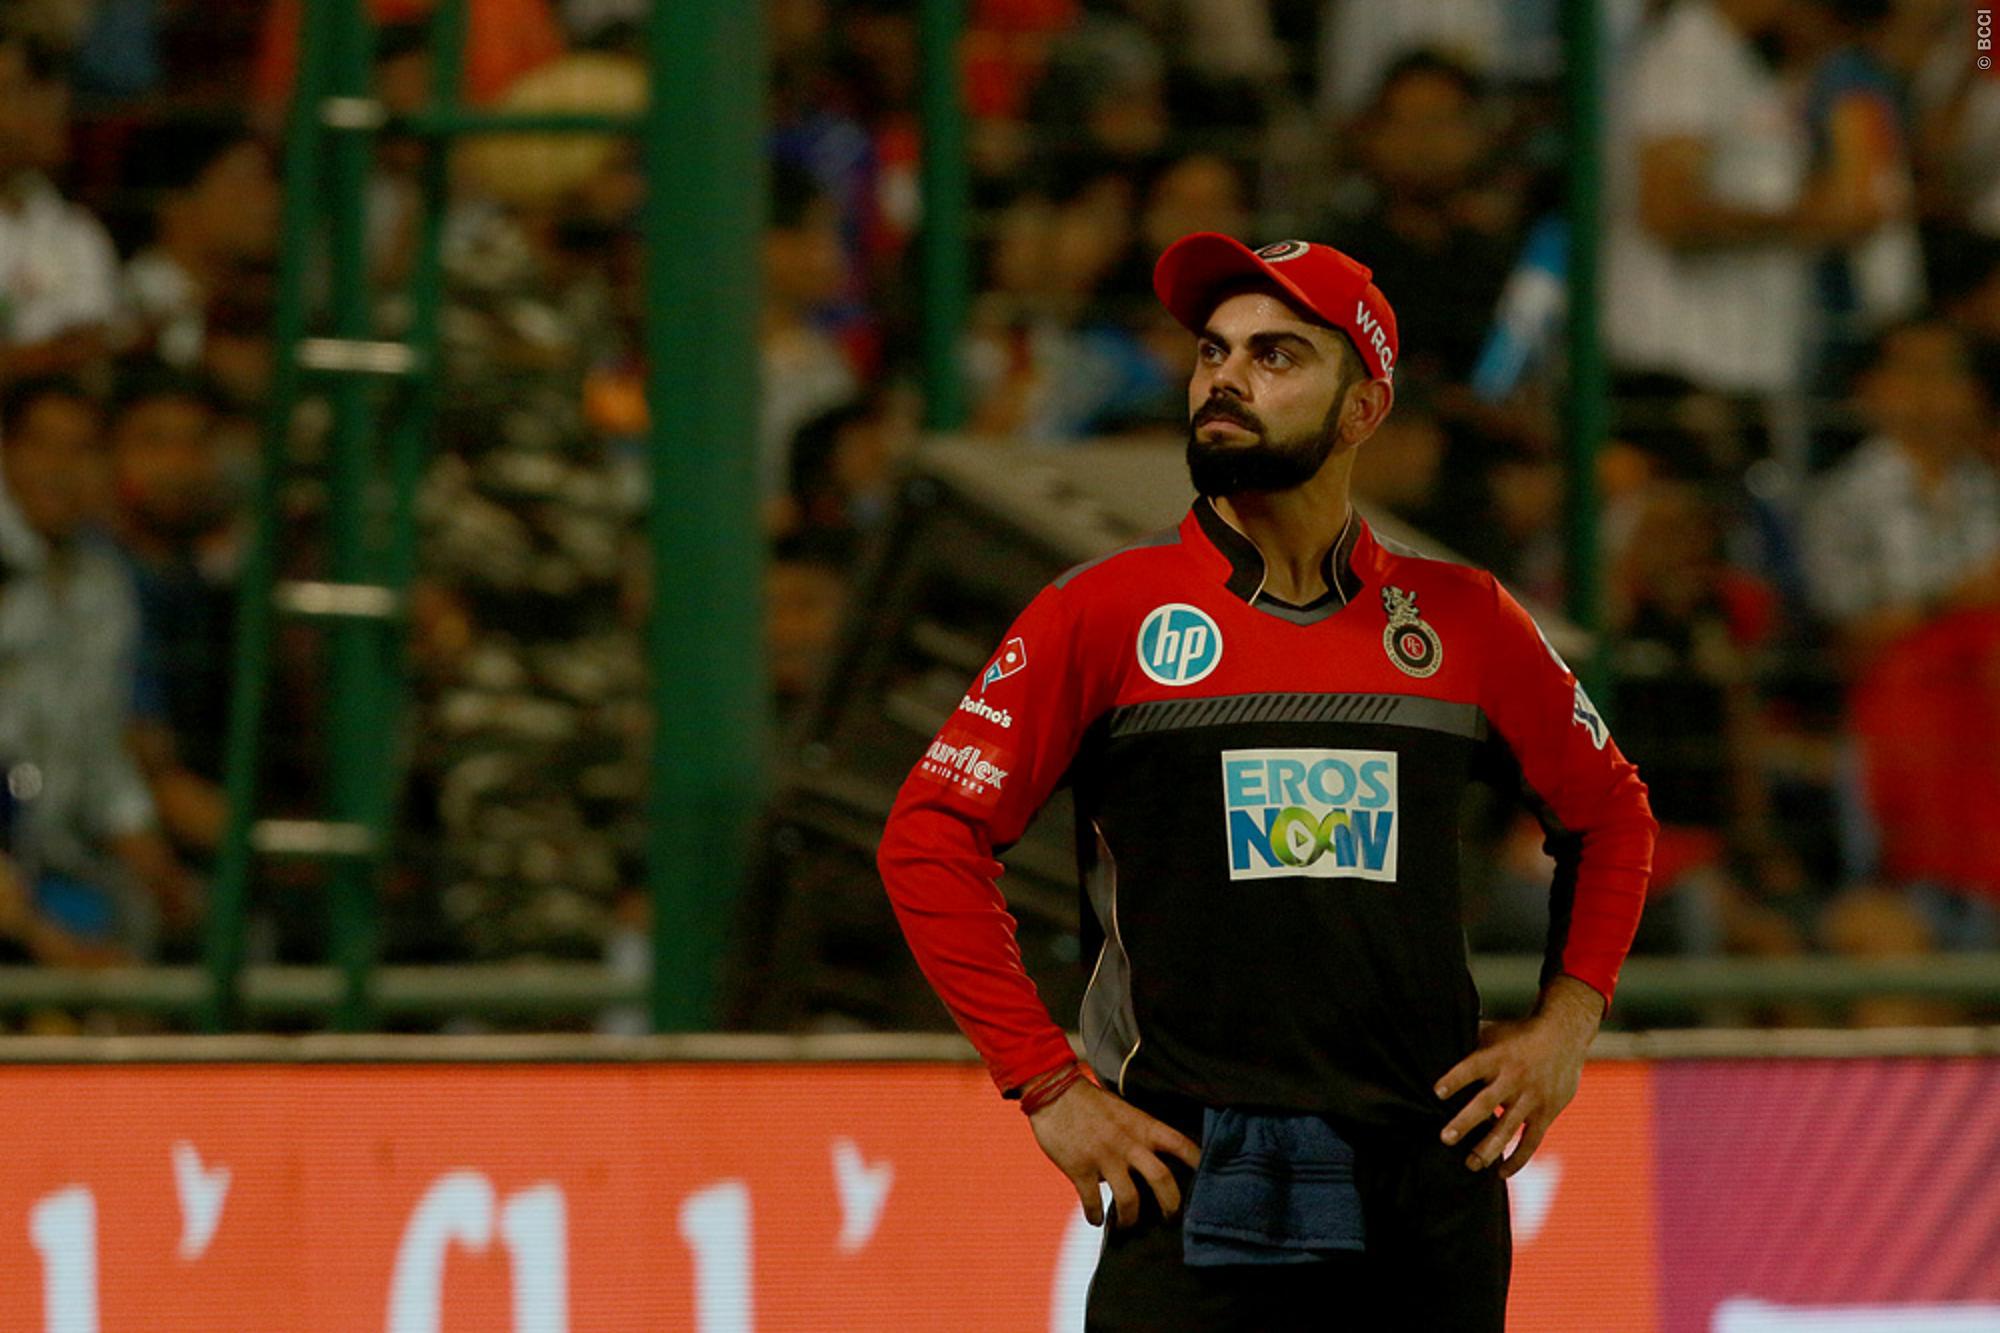 IPL 2019 | Need to keeep composure under pressure, says Virat Kohli